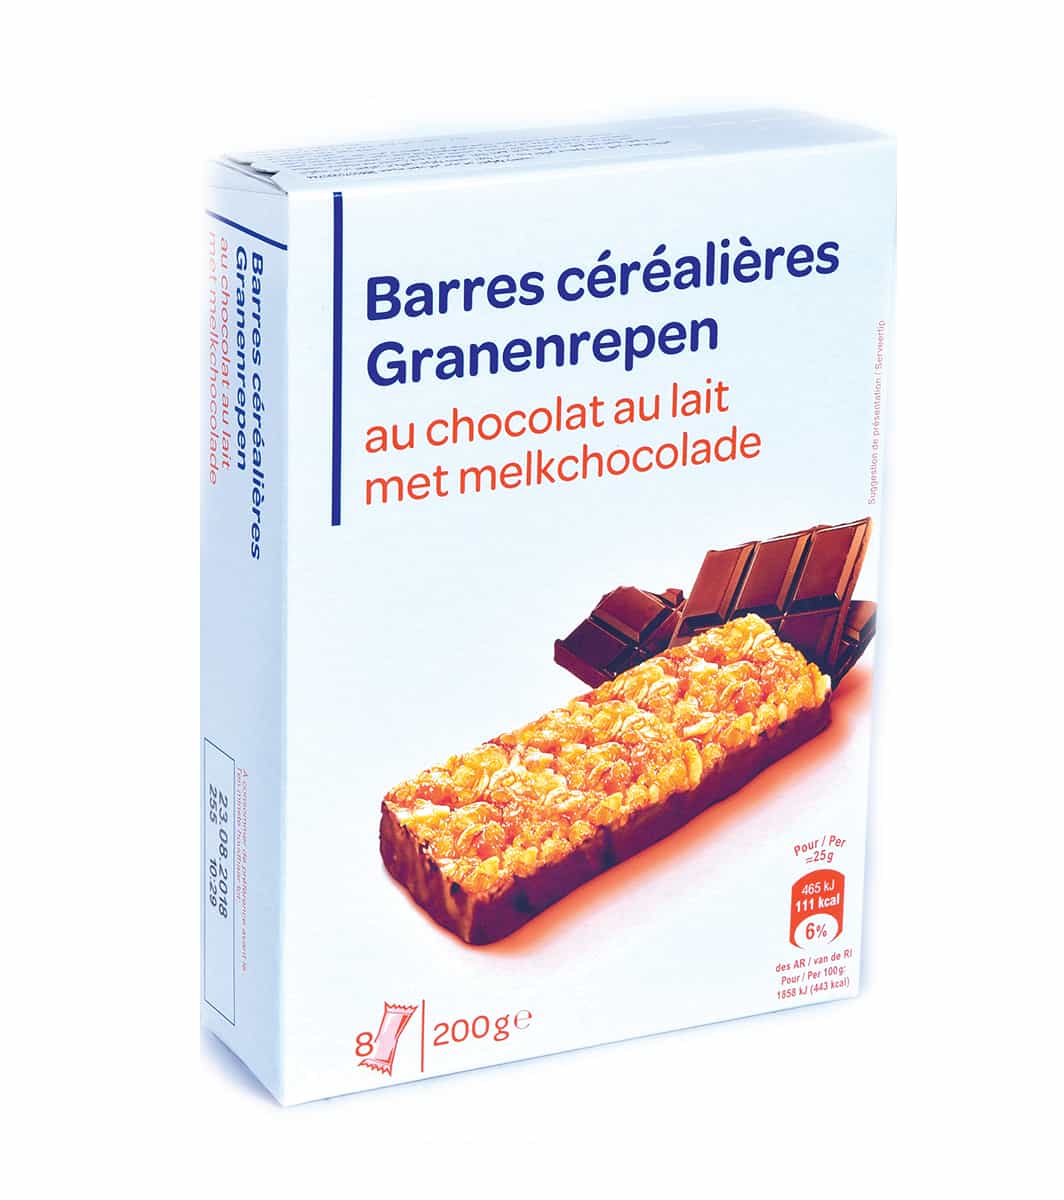 Barres céréales chocolat 200g - Carrefour Maroc